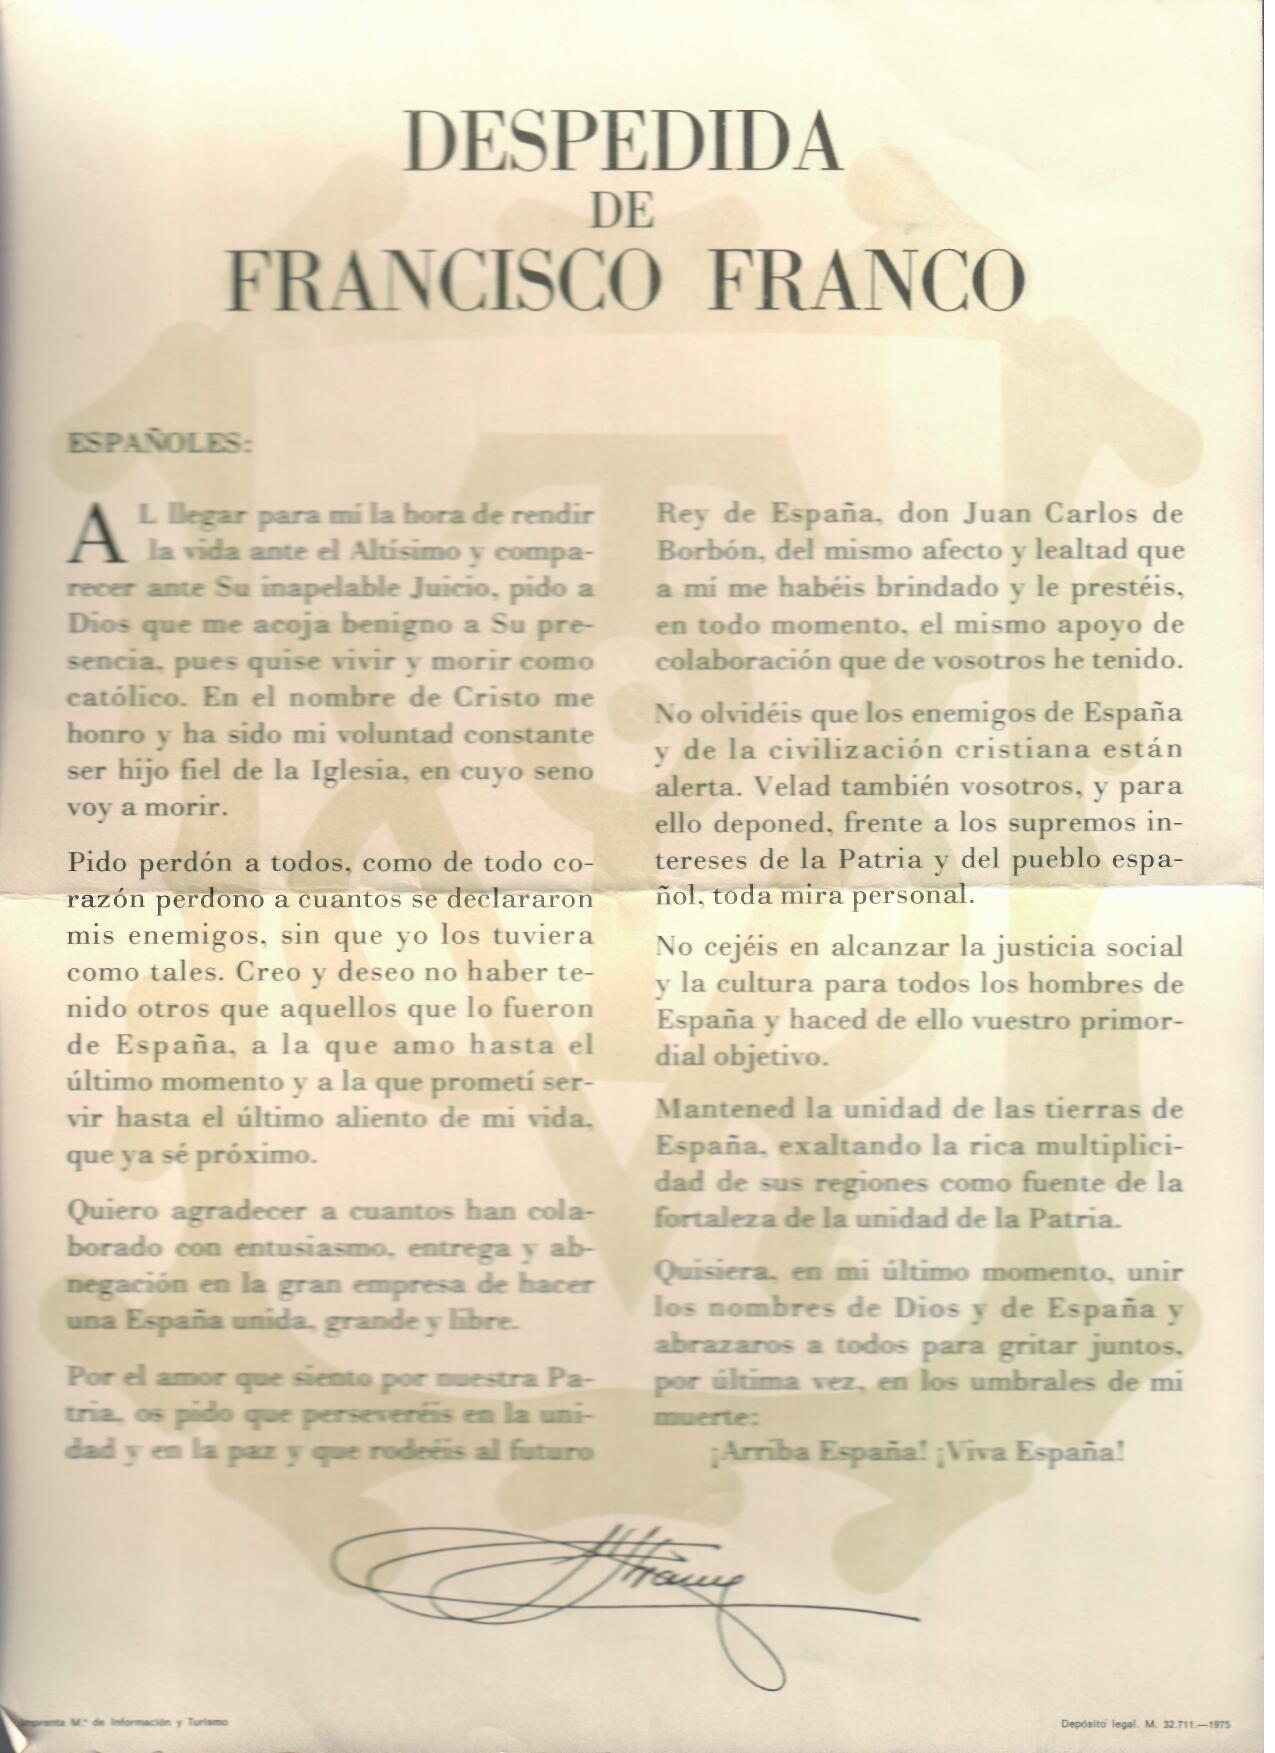 Despedida de Francisco Franco. Imprenta M.º de Información y Turismo